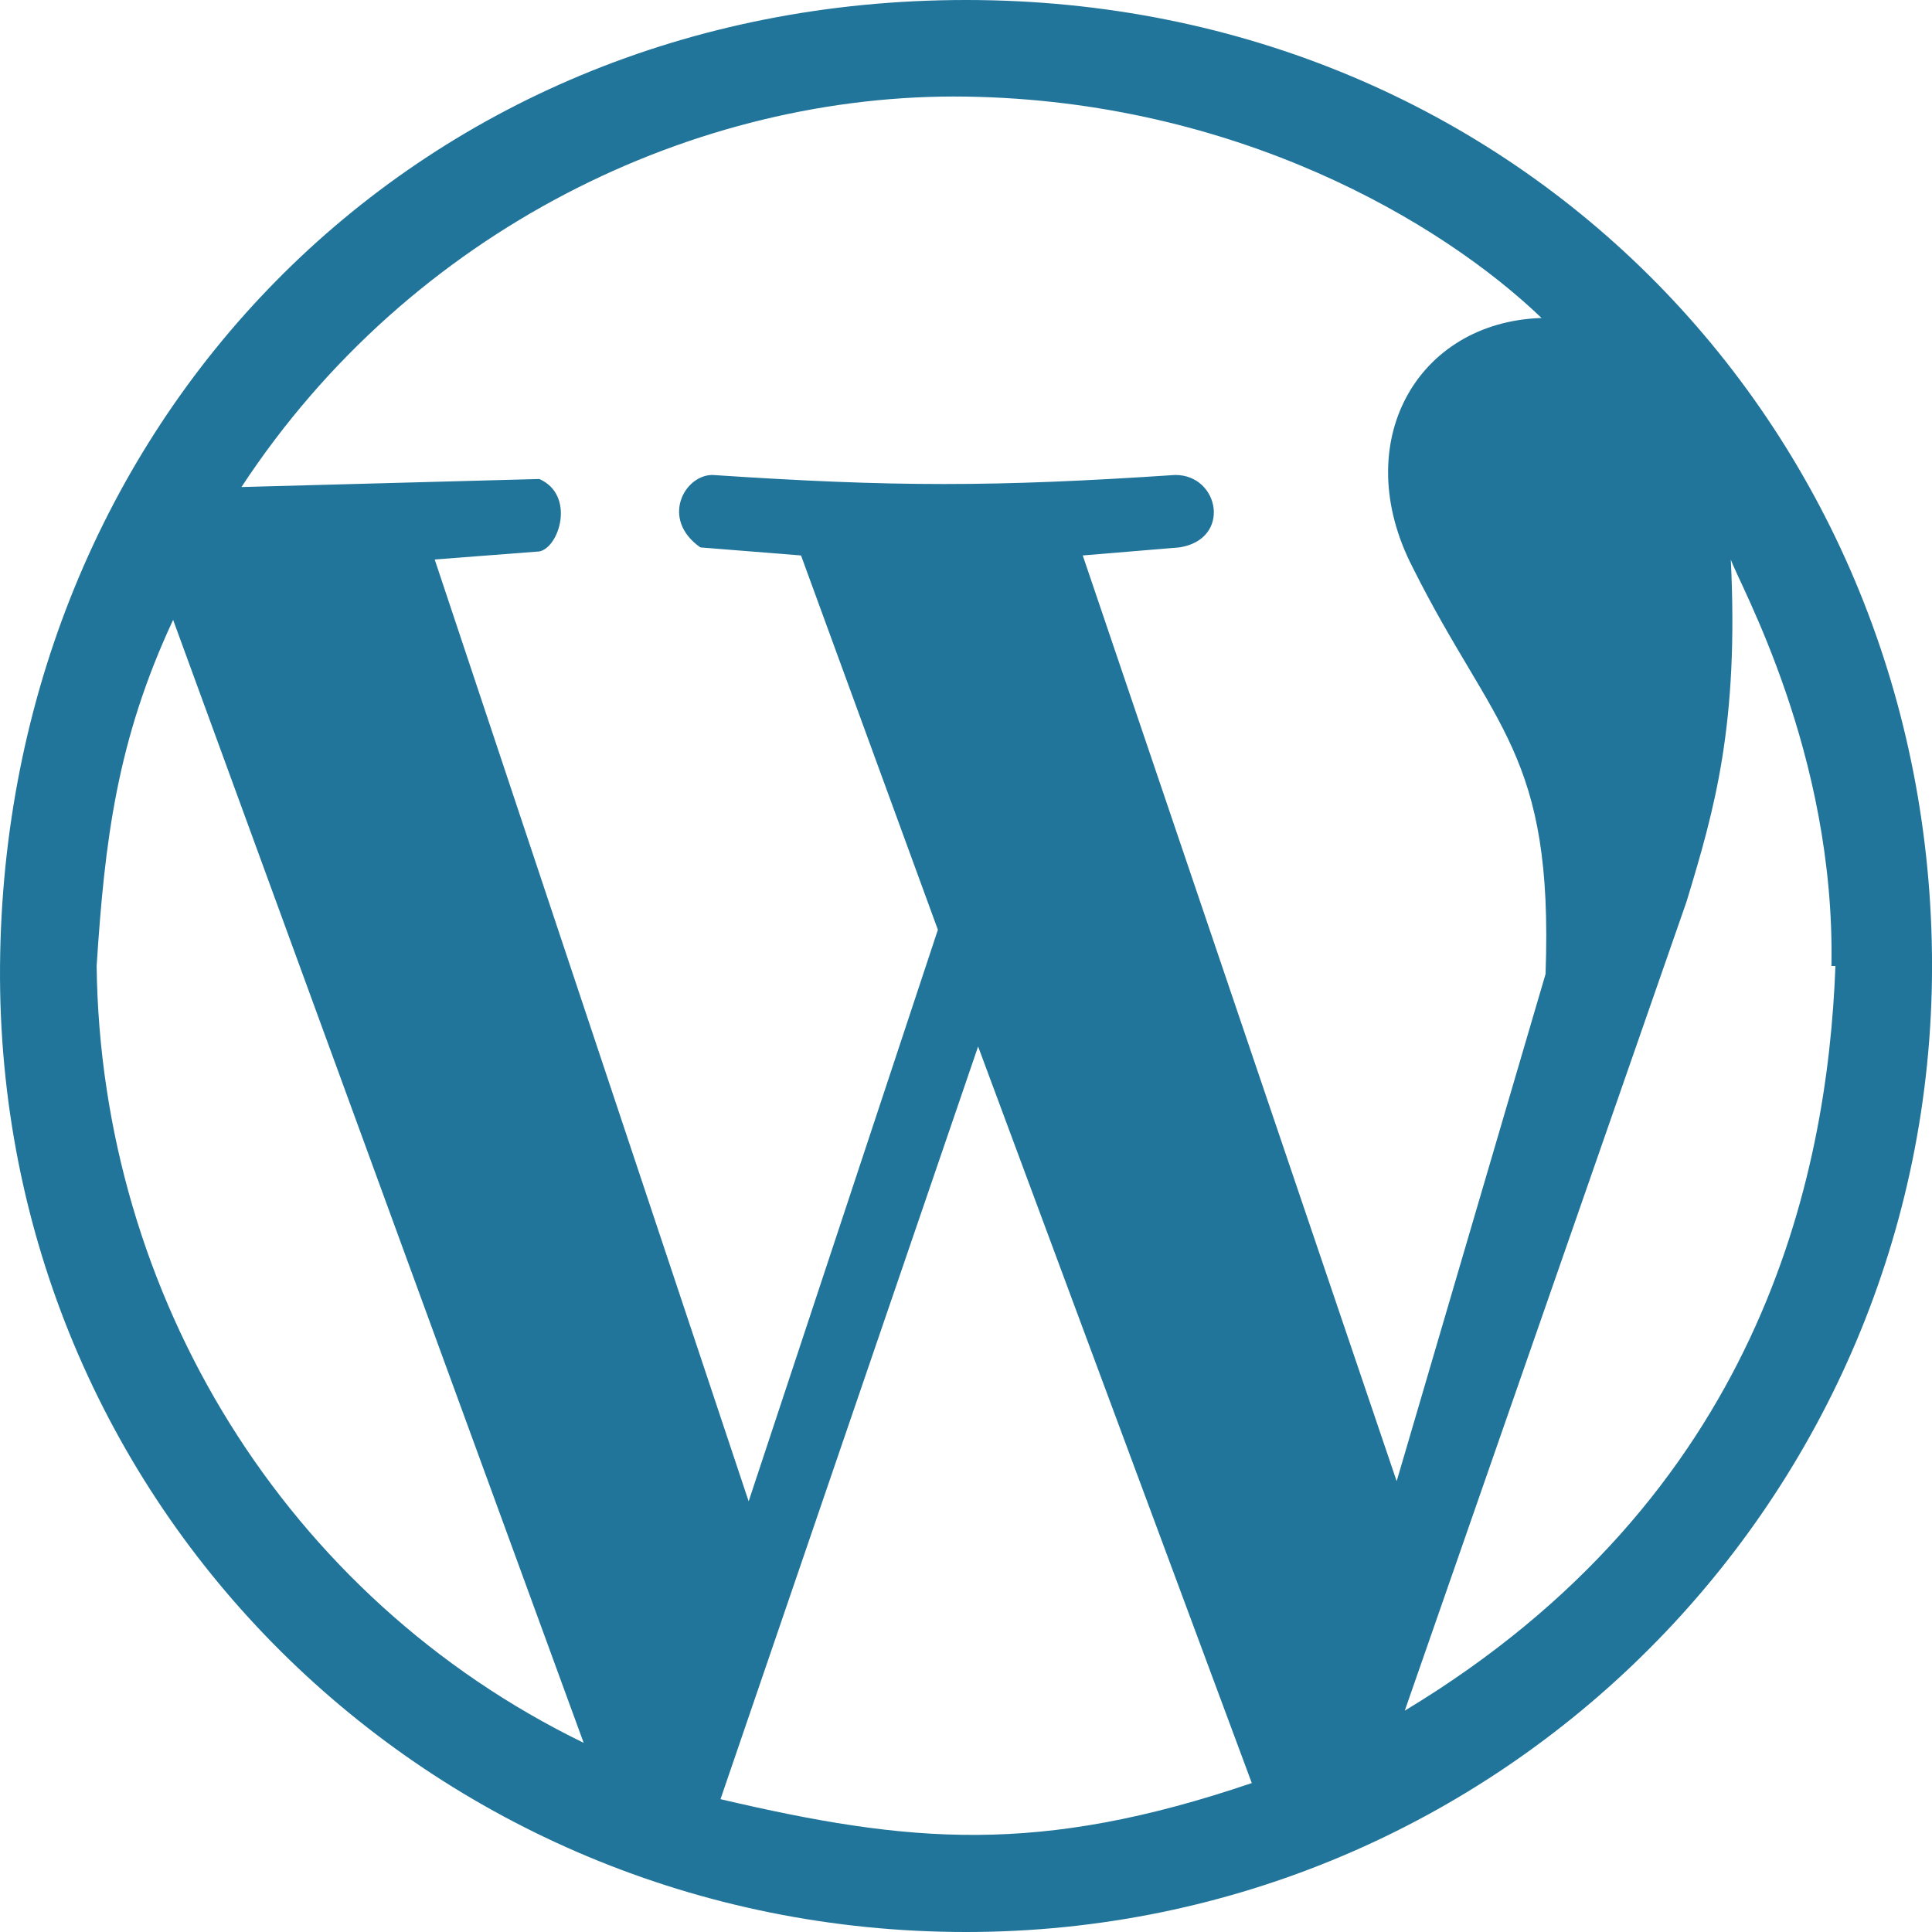 wordpress-icon-1